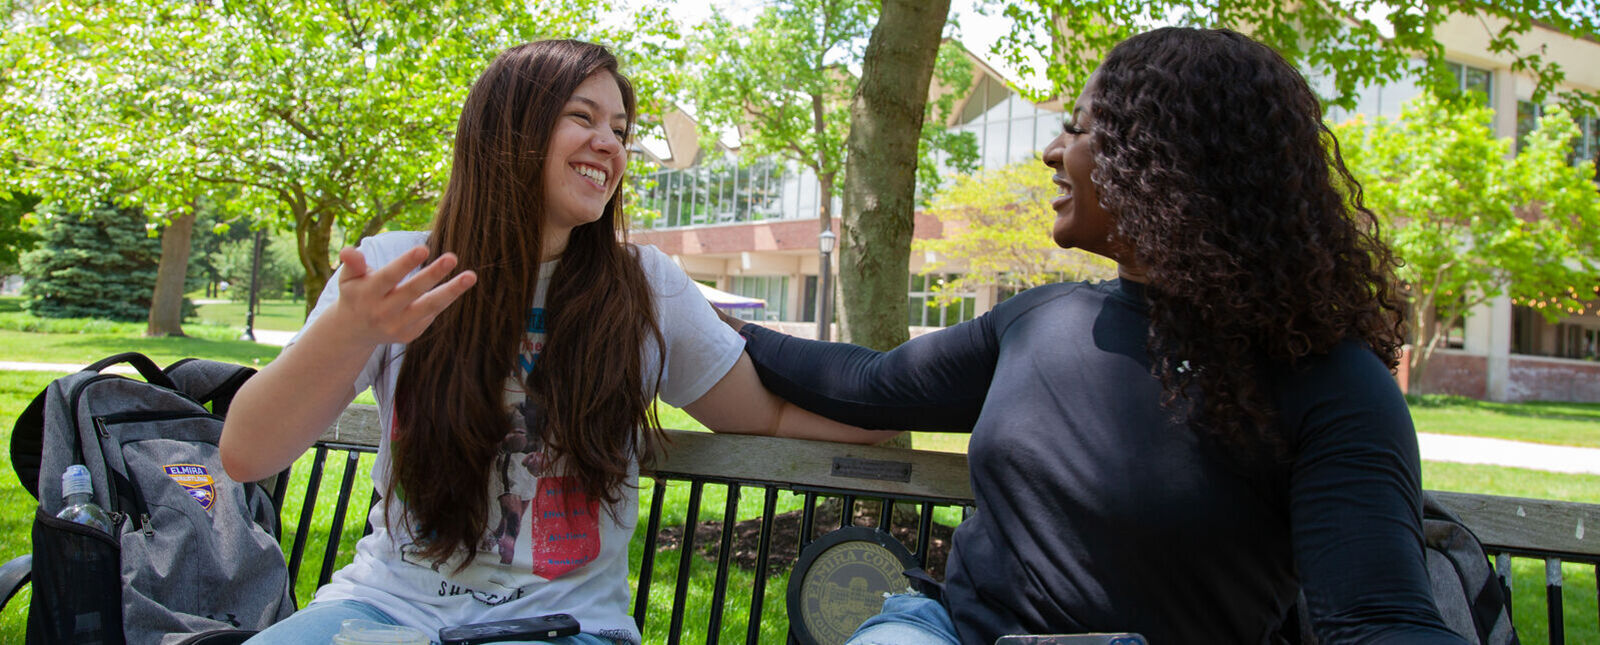 两个女学生在长凳上谈笑风生